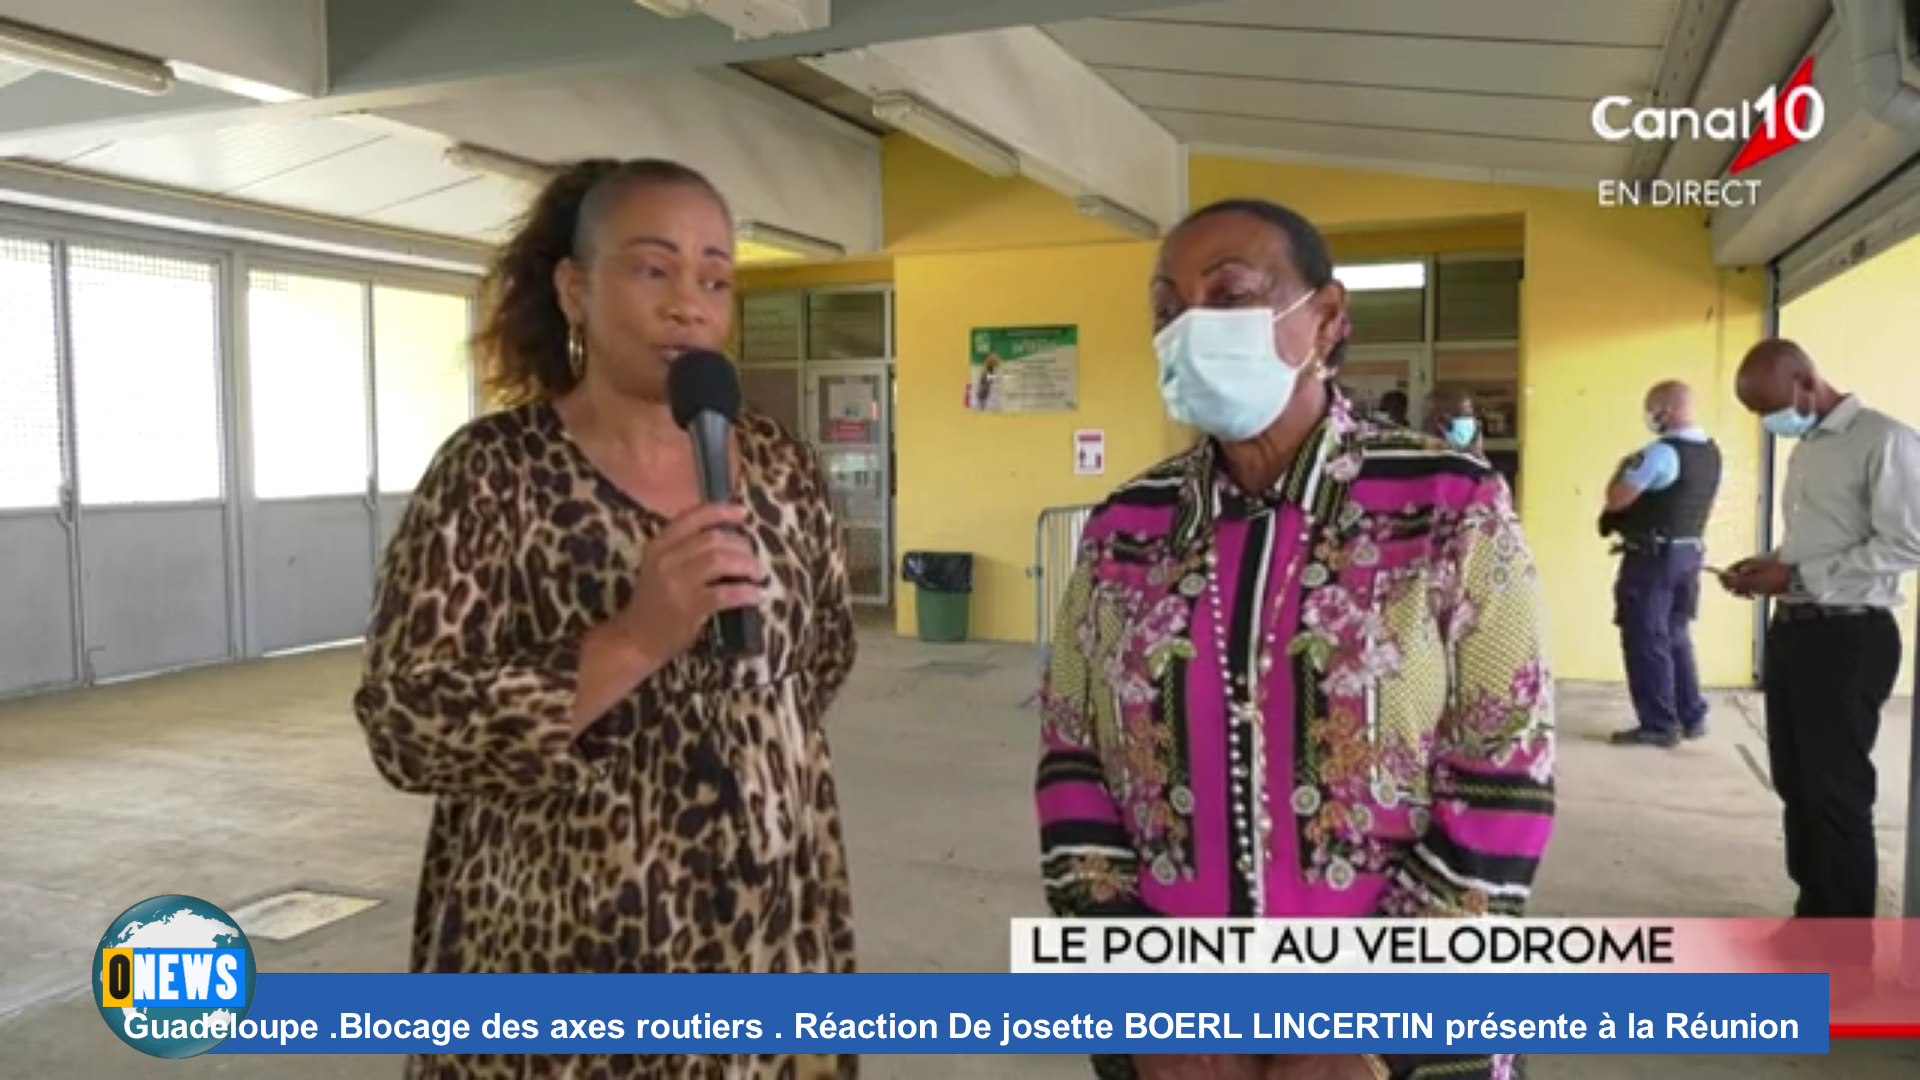 [Vidéo] Onews.Guadeloupe .Blocage des axes routiers . Réaction de Josette BOREL LINCERTIN présente à la Réunion